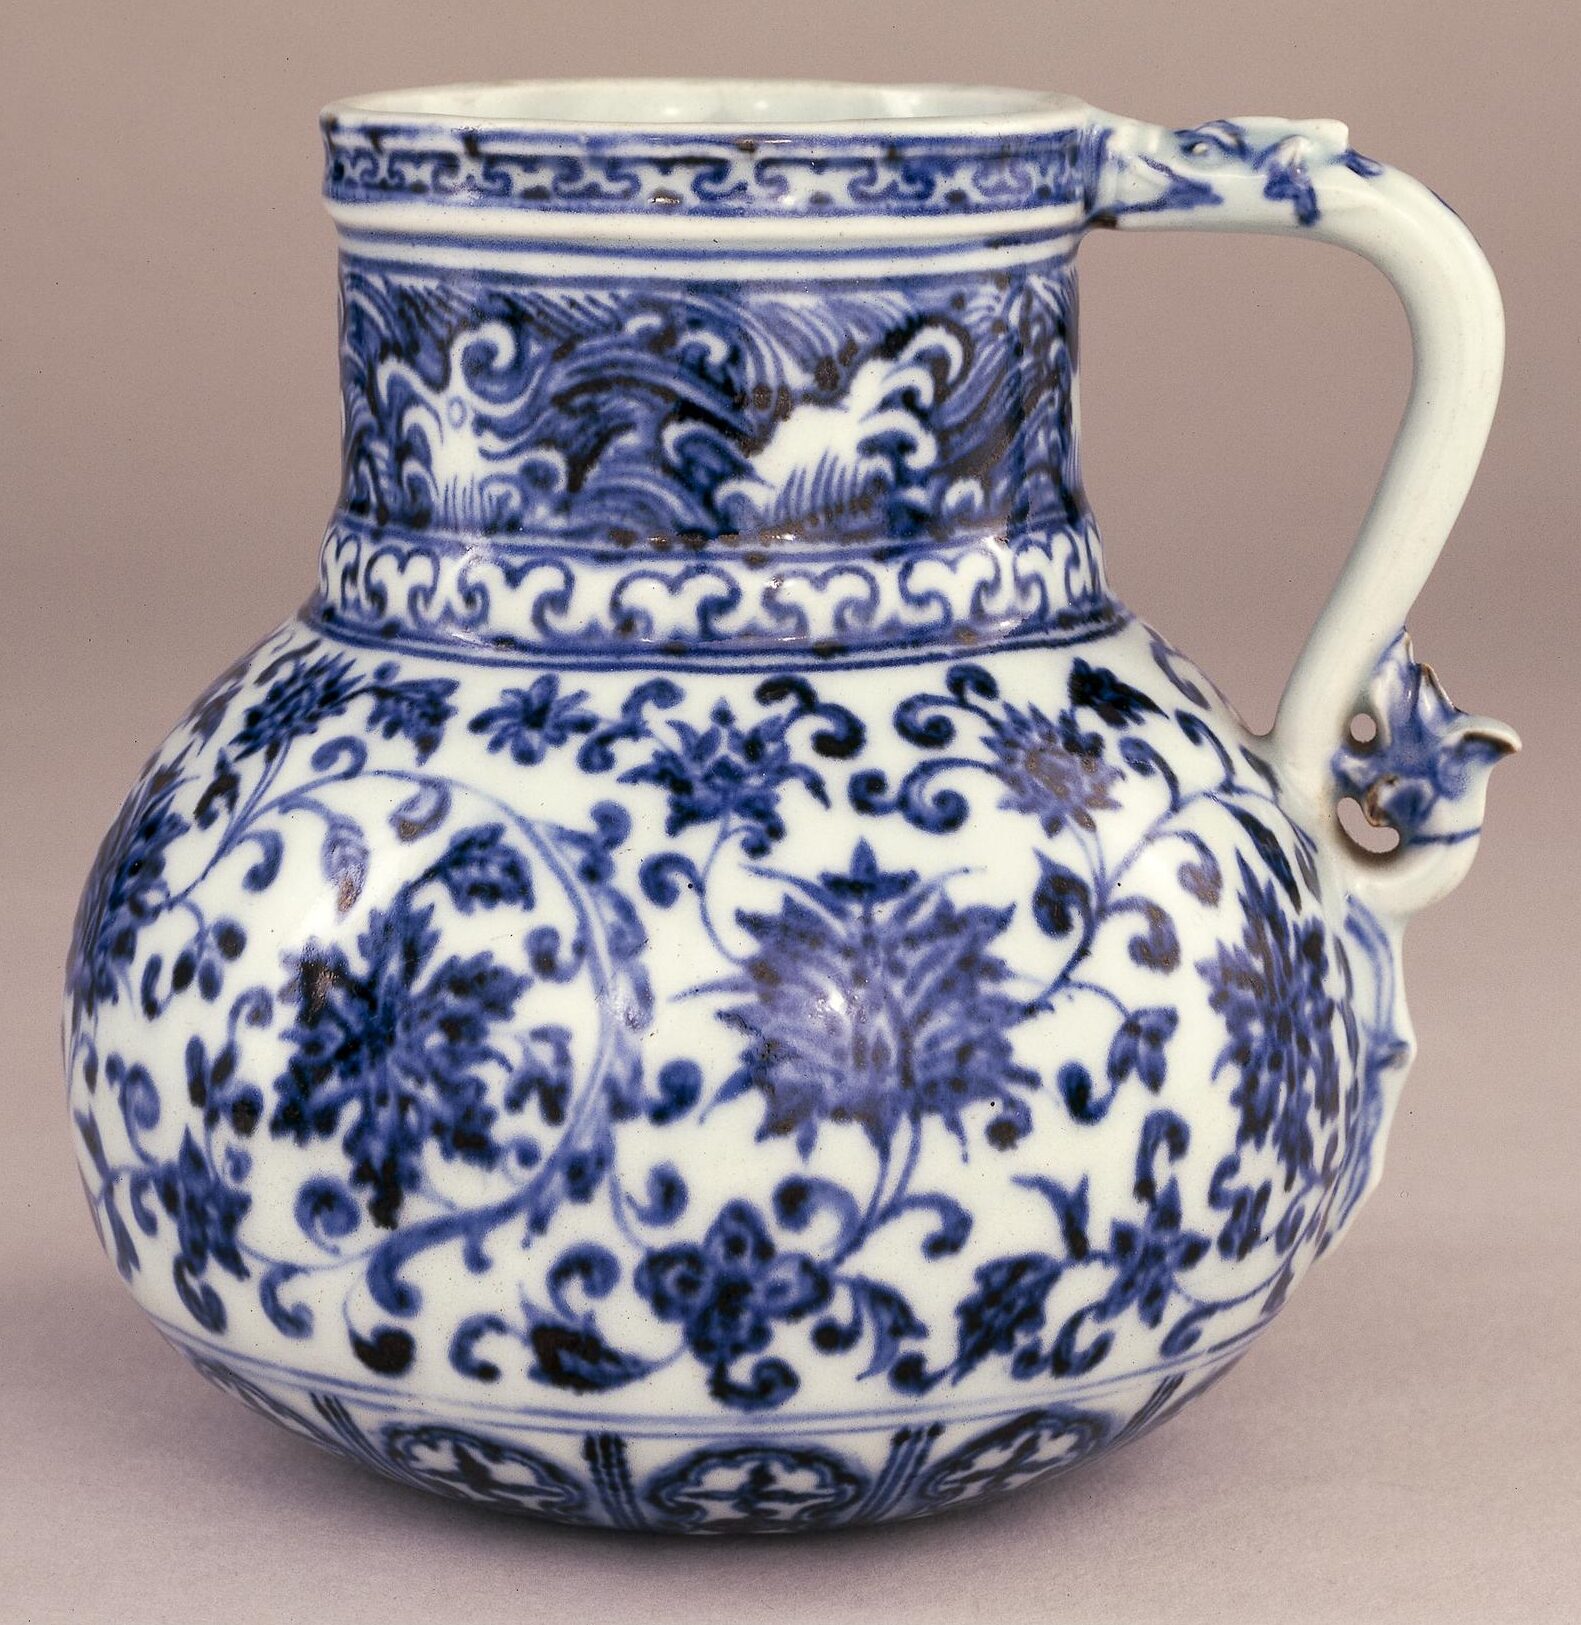 Smarthistory – Chinese porcelain: decoration